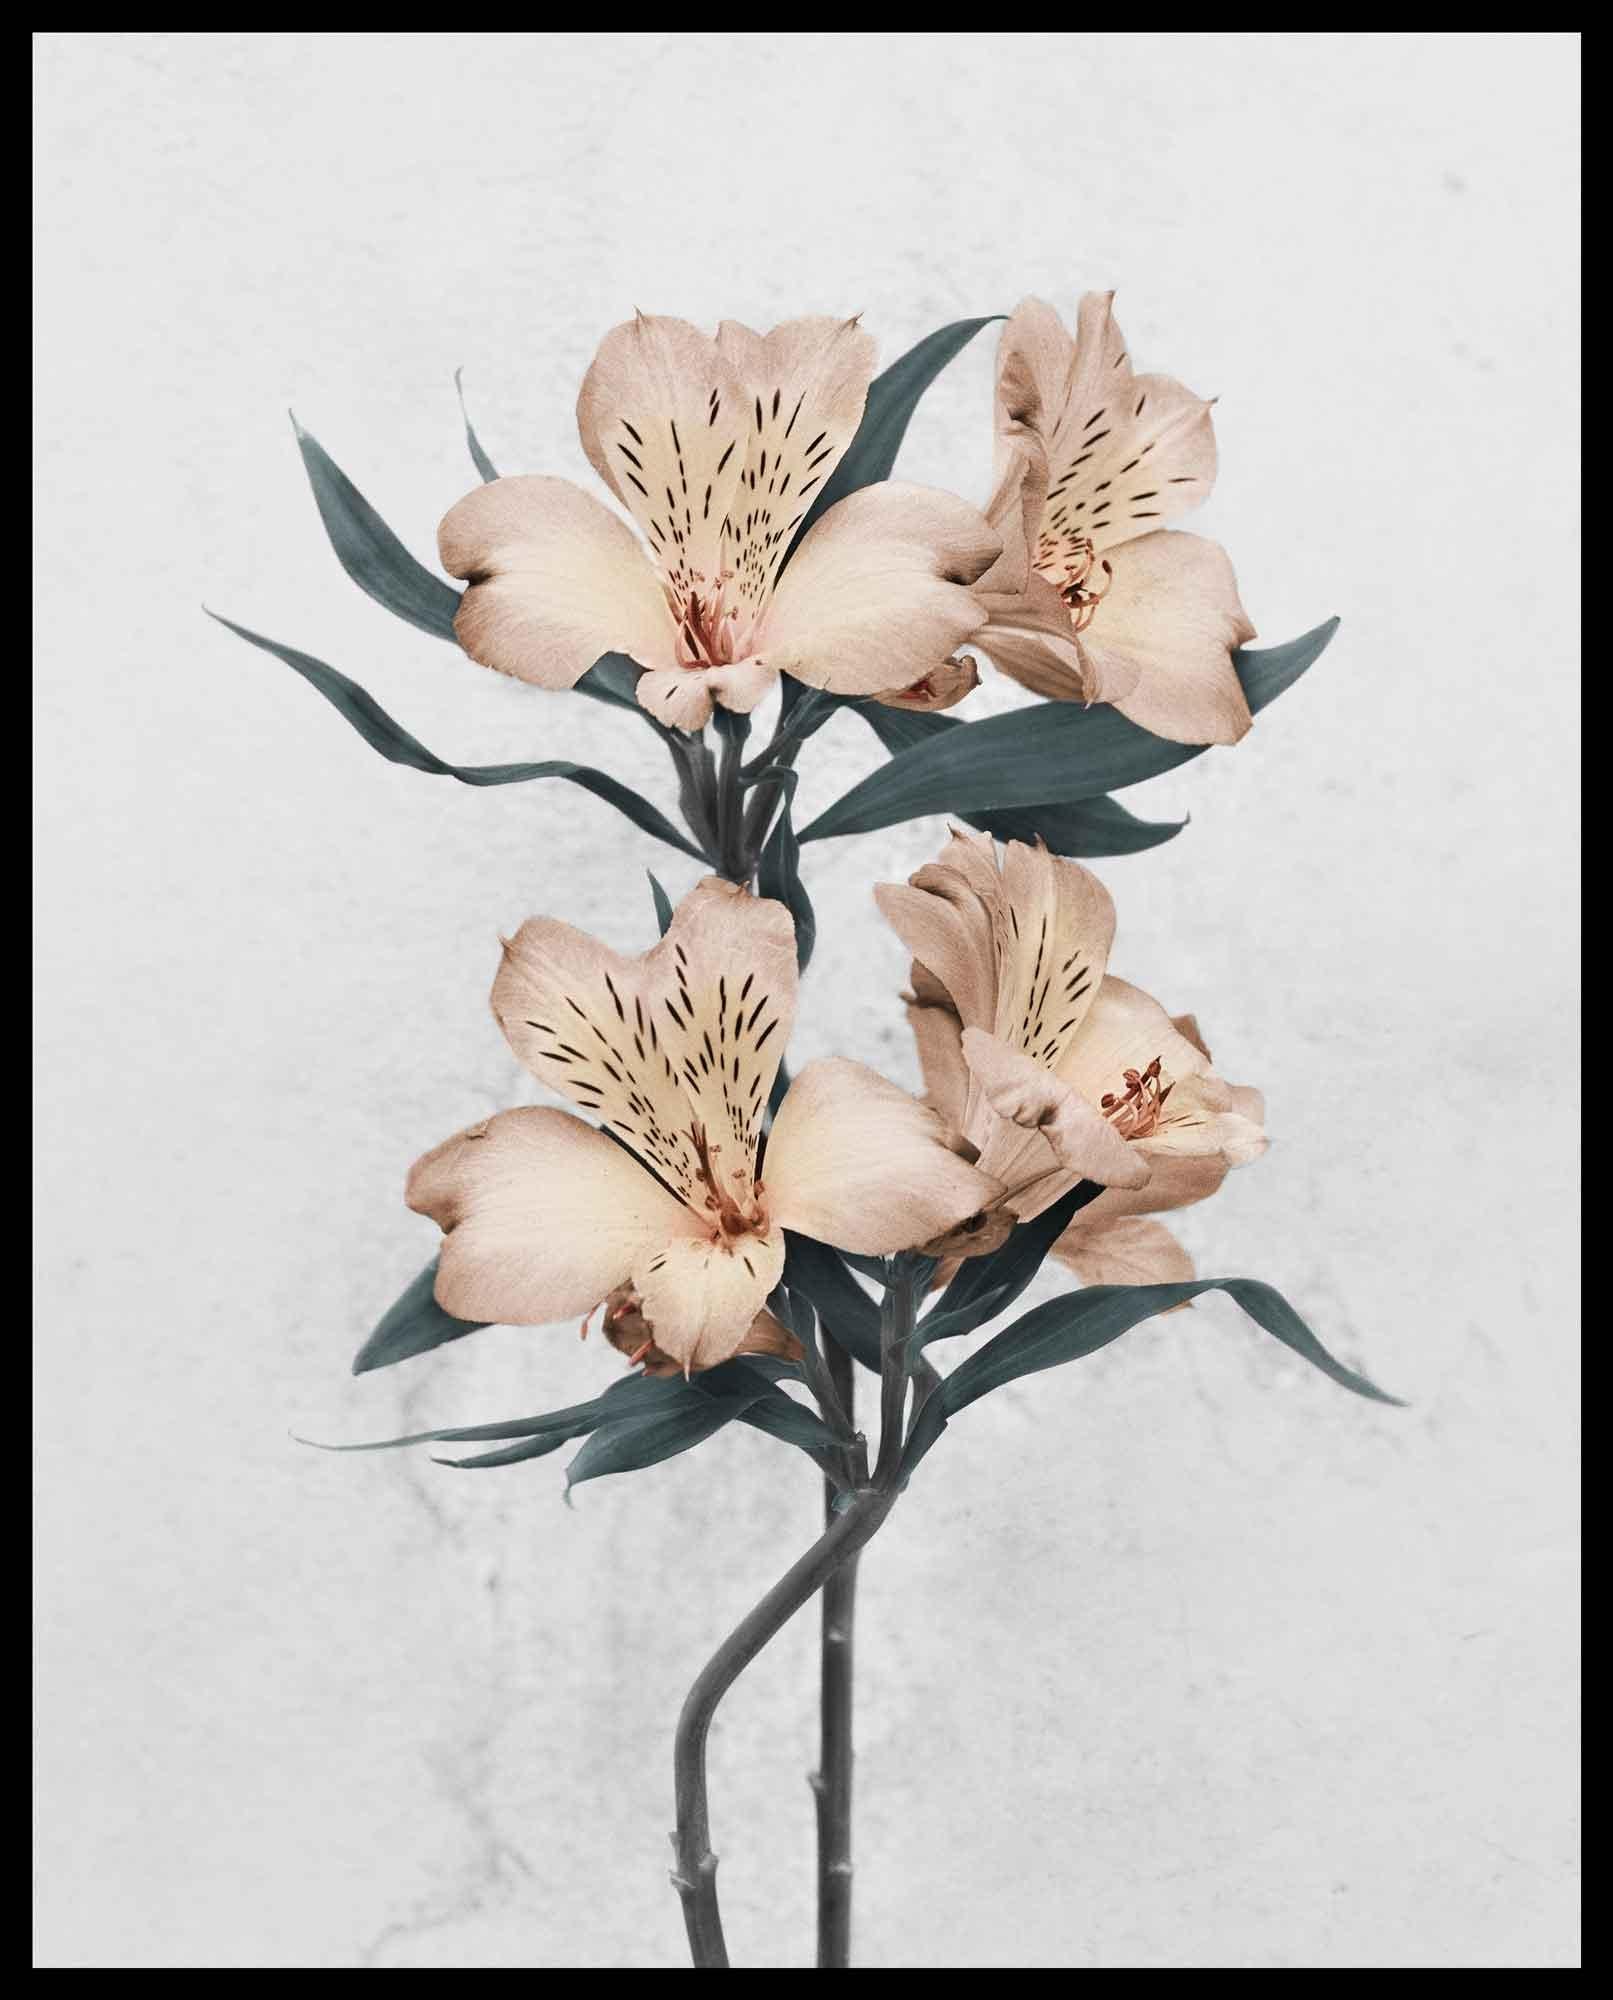 Botanica est une collection de portraits de fleurs photographiées en noir et blanc puis subtilement colorées pour les mettre en valeur et les transformer. Cette série symbolise un moment de solitude paisible dans un monde de plus en plus complexe,